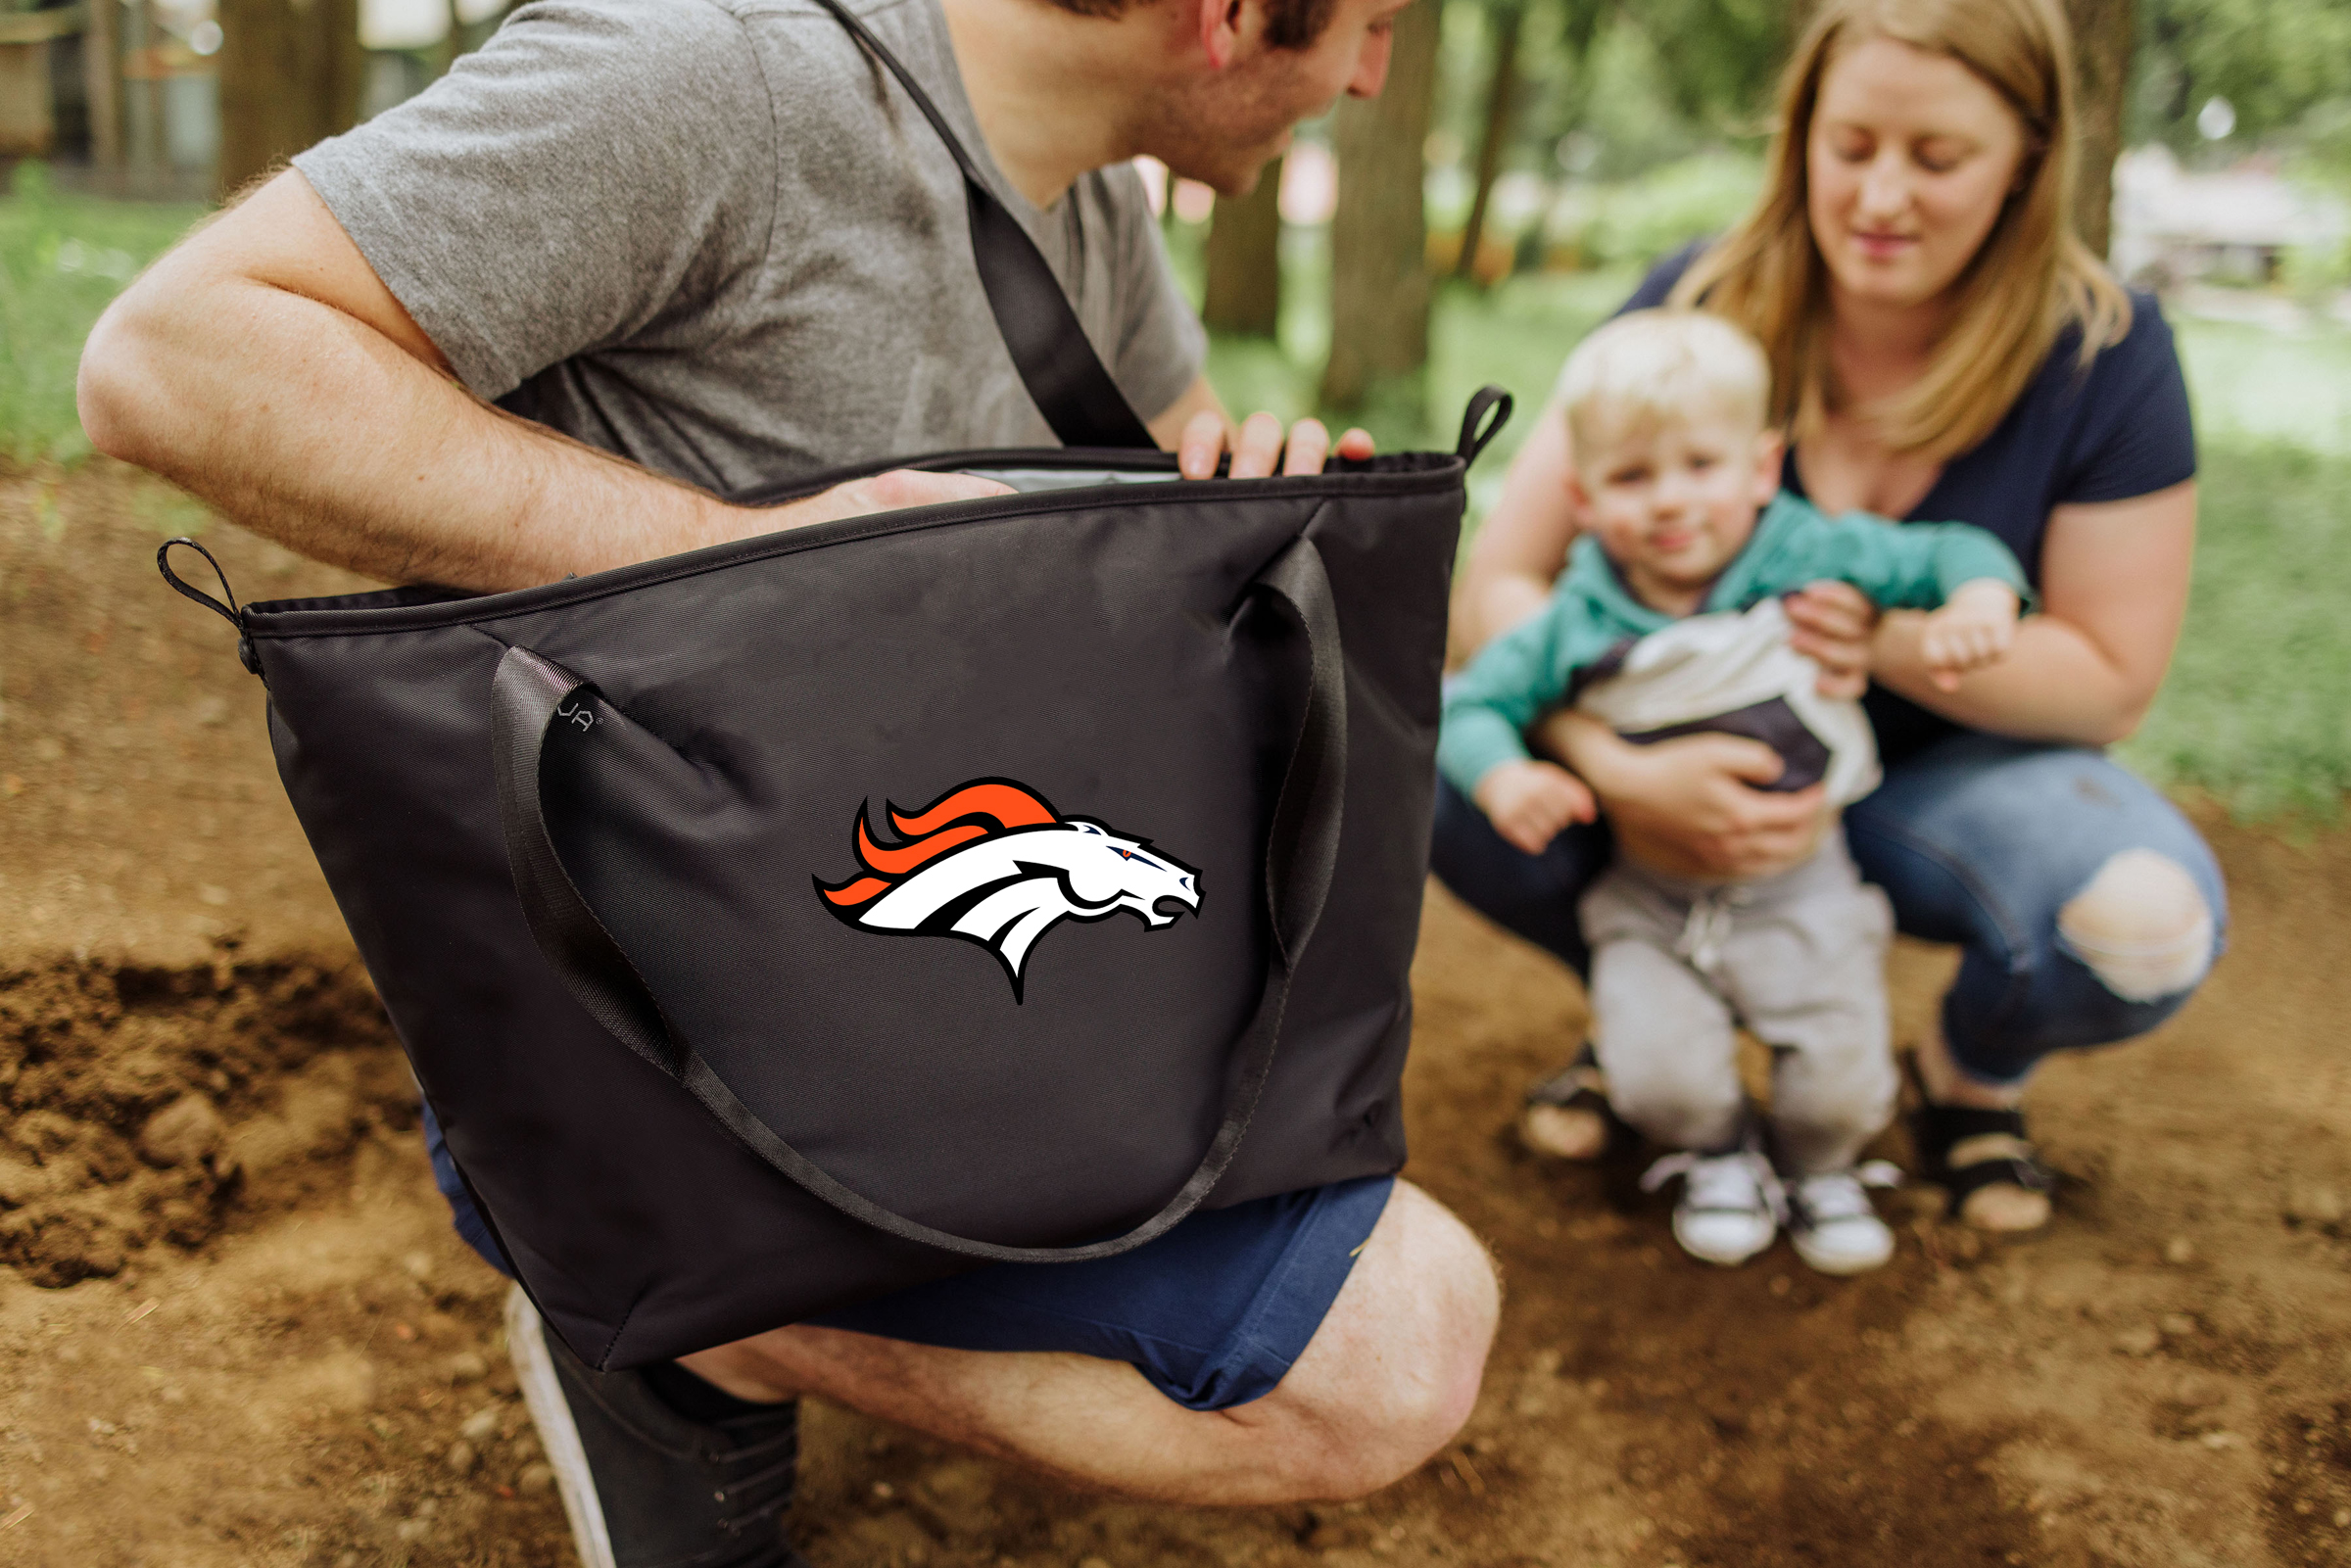 Denver Broncos - Tarana Cooler Tote Bag